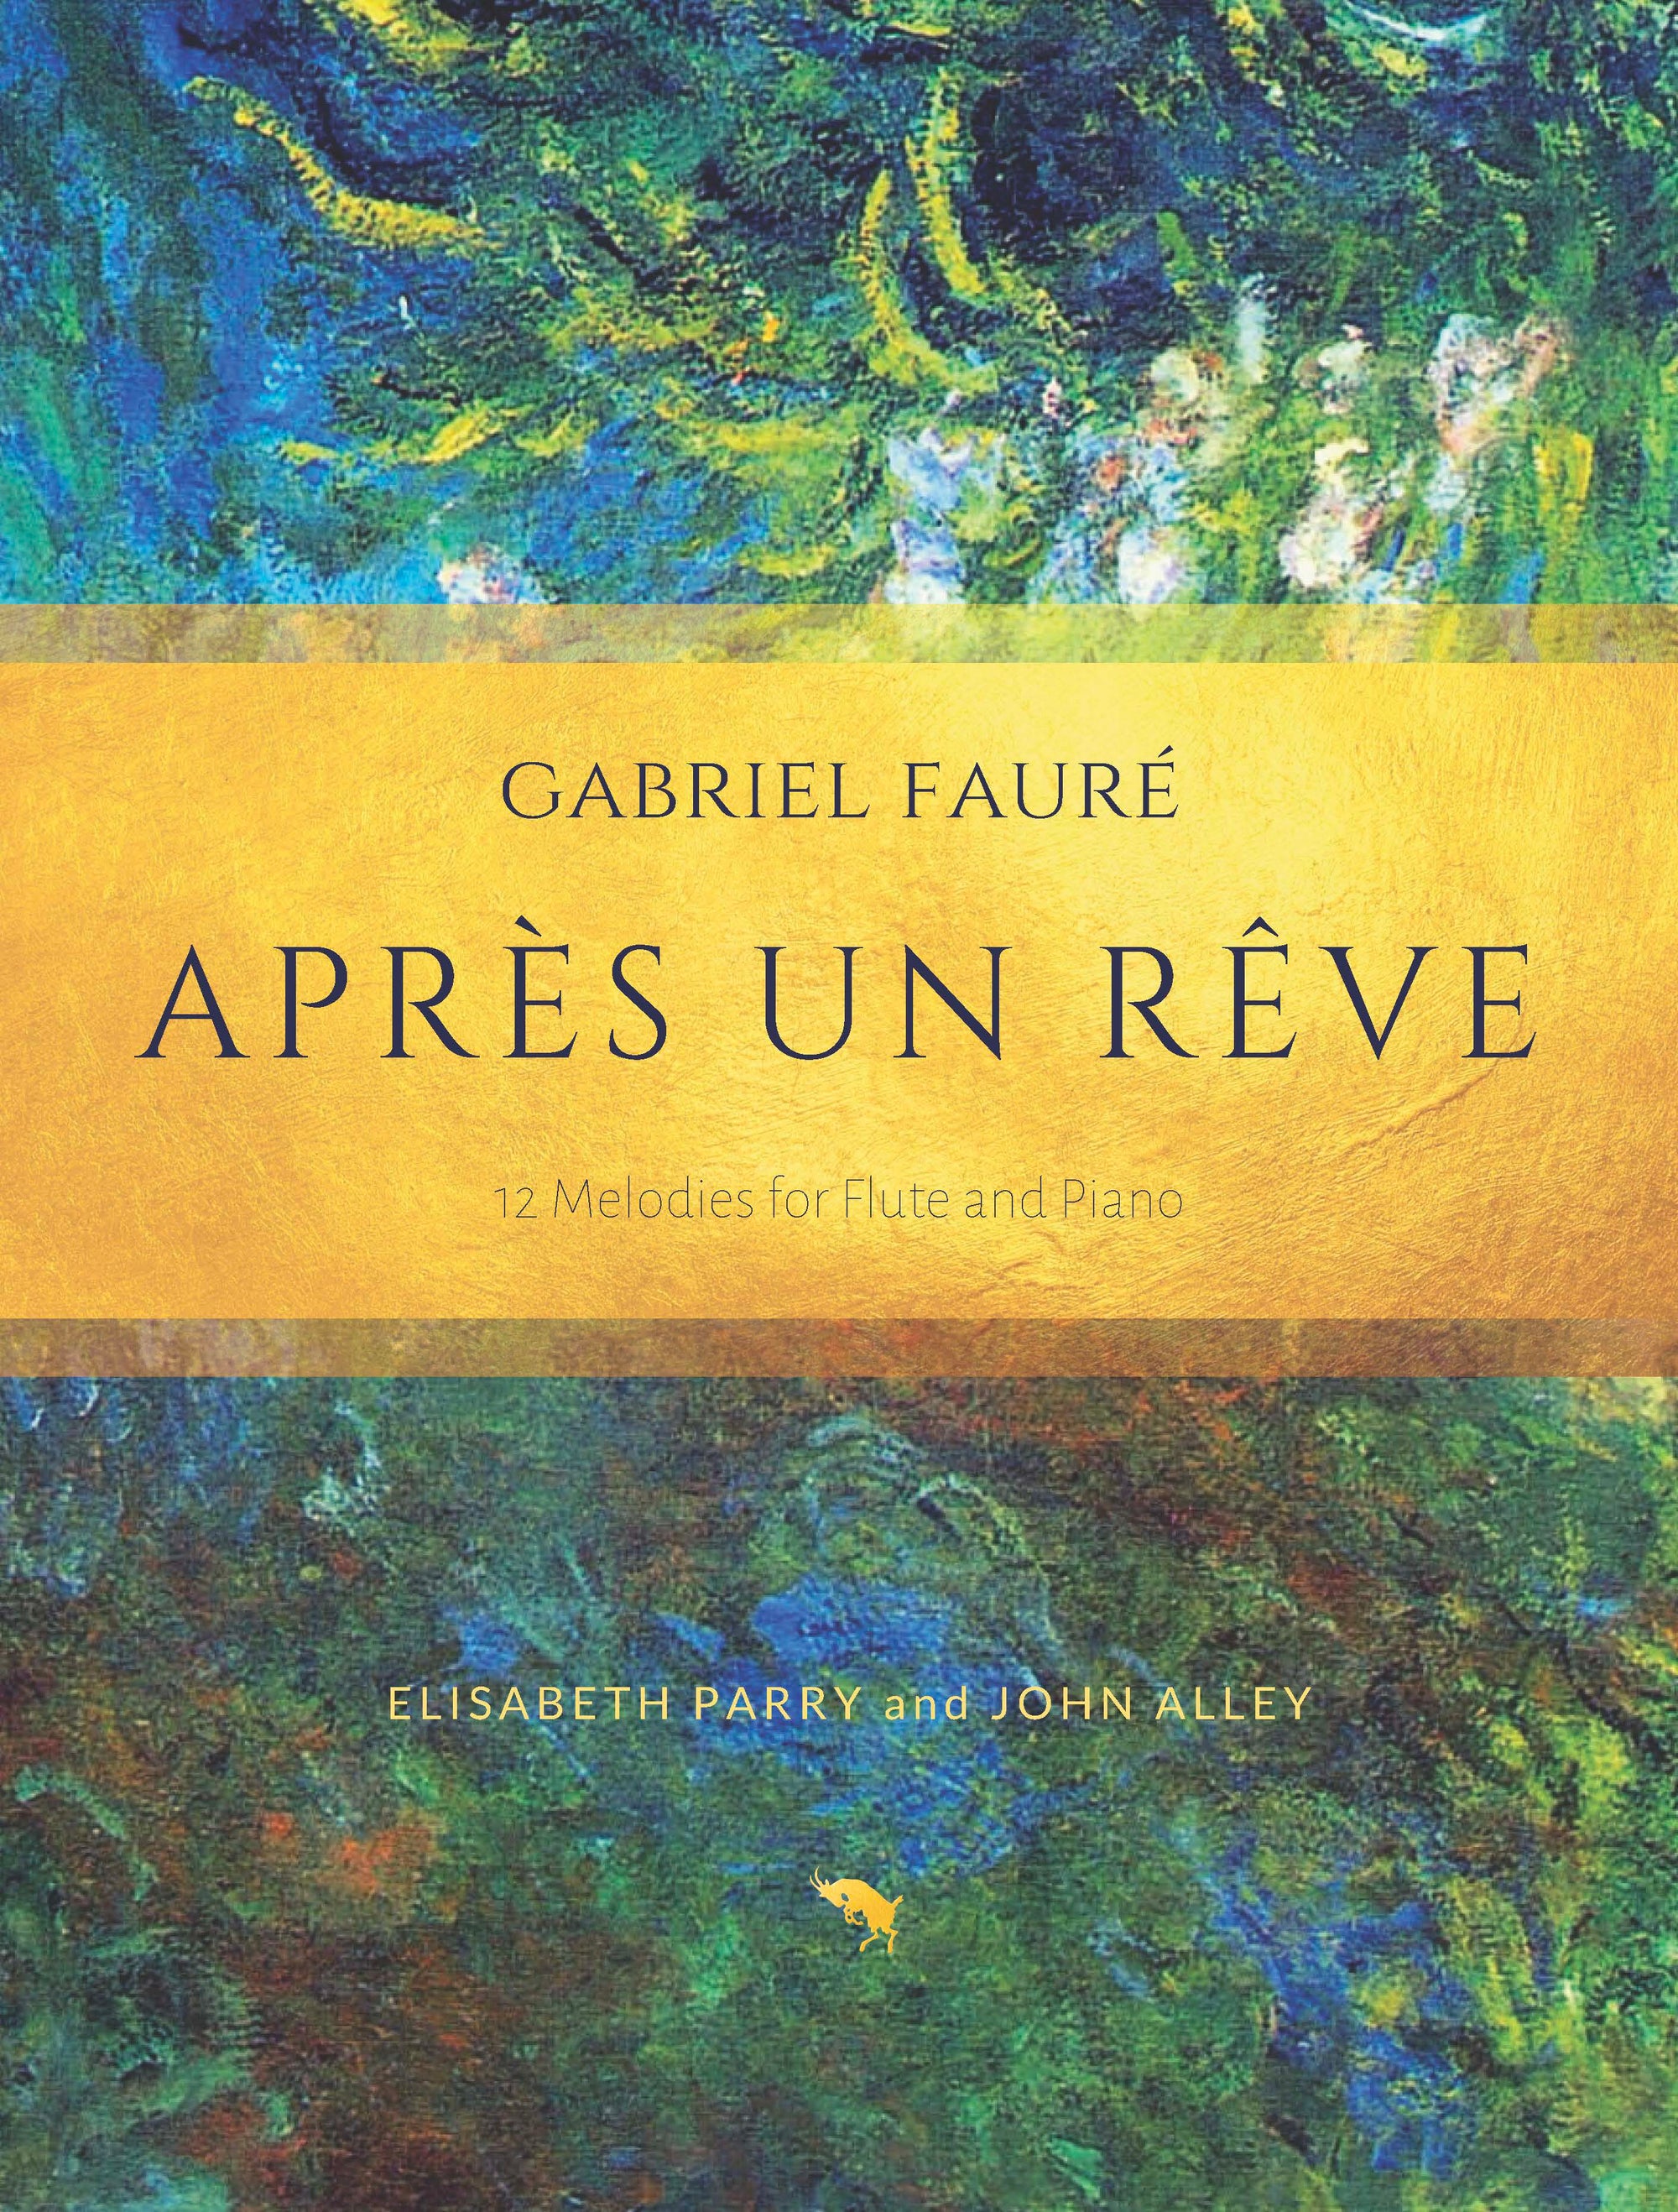 Fauré: Après un rêve (arr. for flute & piano)